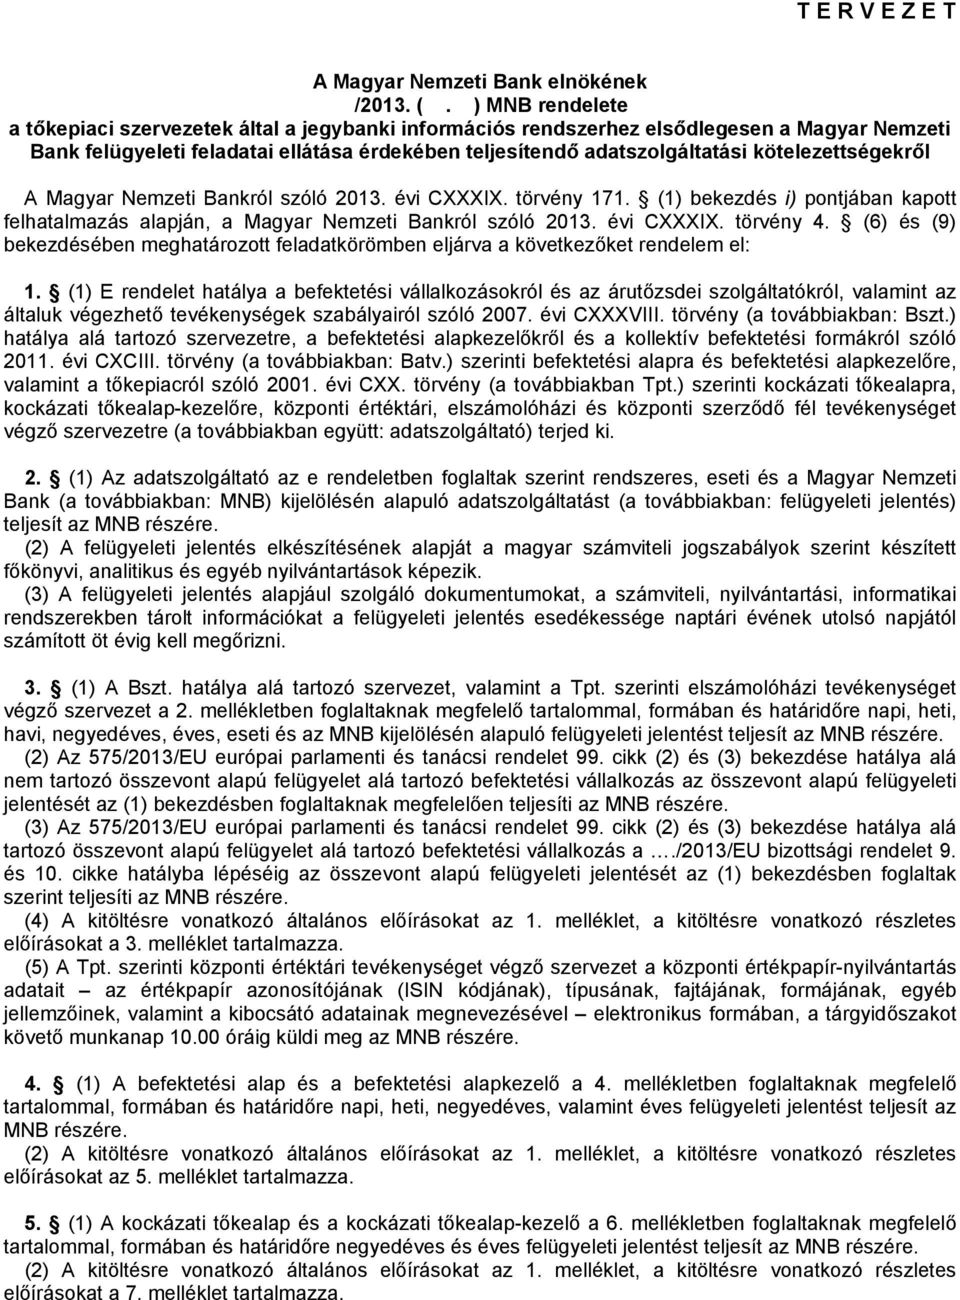 kötelezettségekről A Magyar Nemzeti Bankról szóló 2013. évi CXXXIX. törvény 171. (1) bekezdés i) pontjában kapott felhatalmazás alapján, a Magyar Nemzeti Bankról szóló 2013. évi CXXXIX. törvény 4.